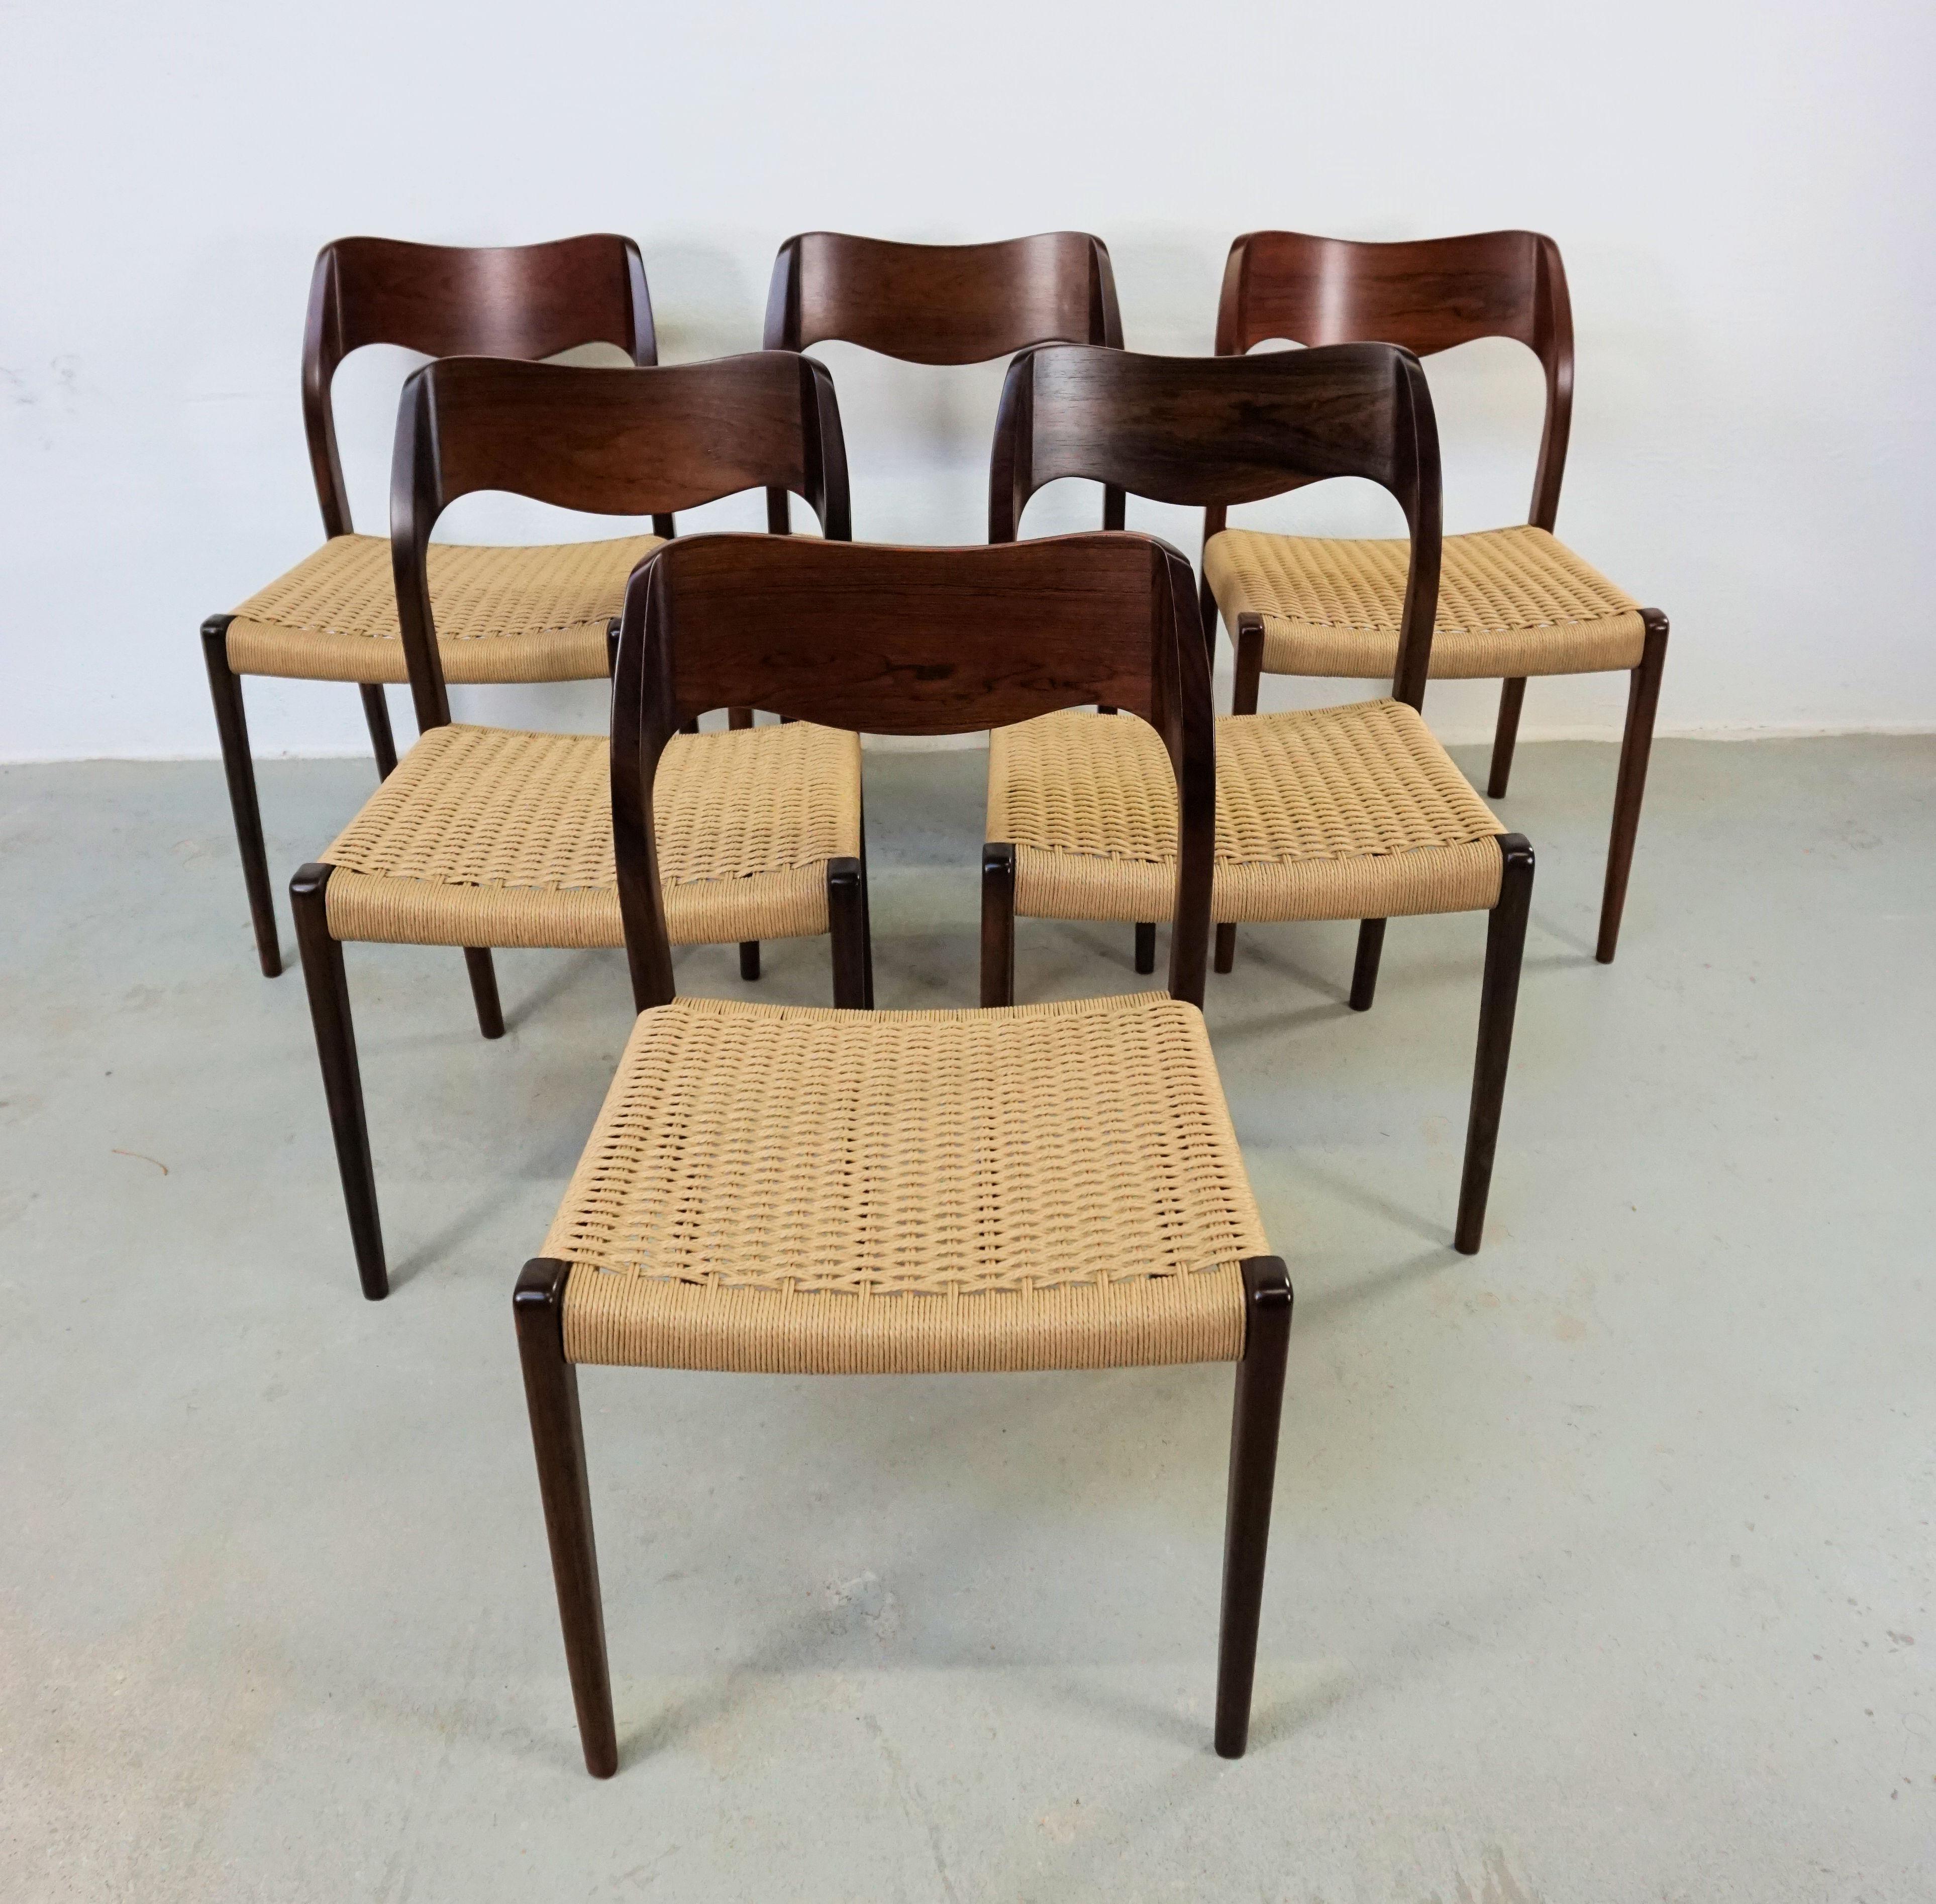 1960 Niels Otto Møller six chaises de salle à manger en palissandre avec de nouvelles assises en corde de papier conçues par Niels Otto Møller en 1951.

Les chaises sont dotées d'une structure solide et d'un dossier plaqué en bois de rose, avec des